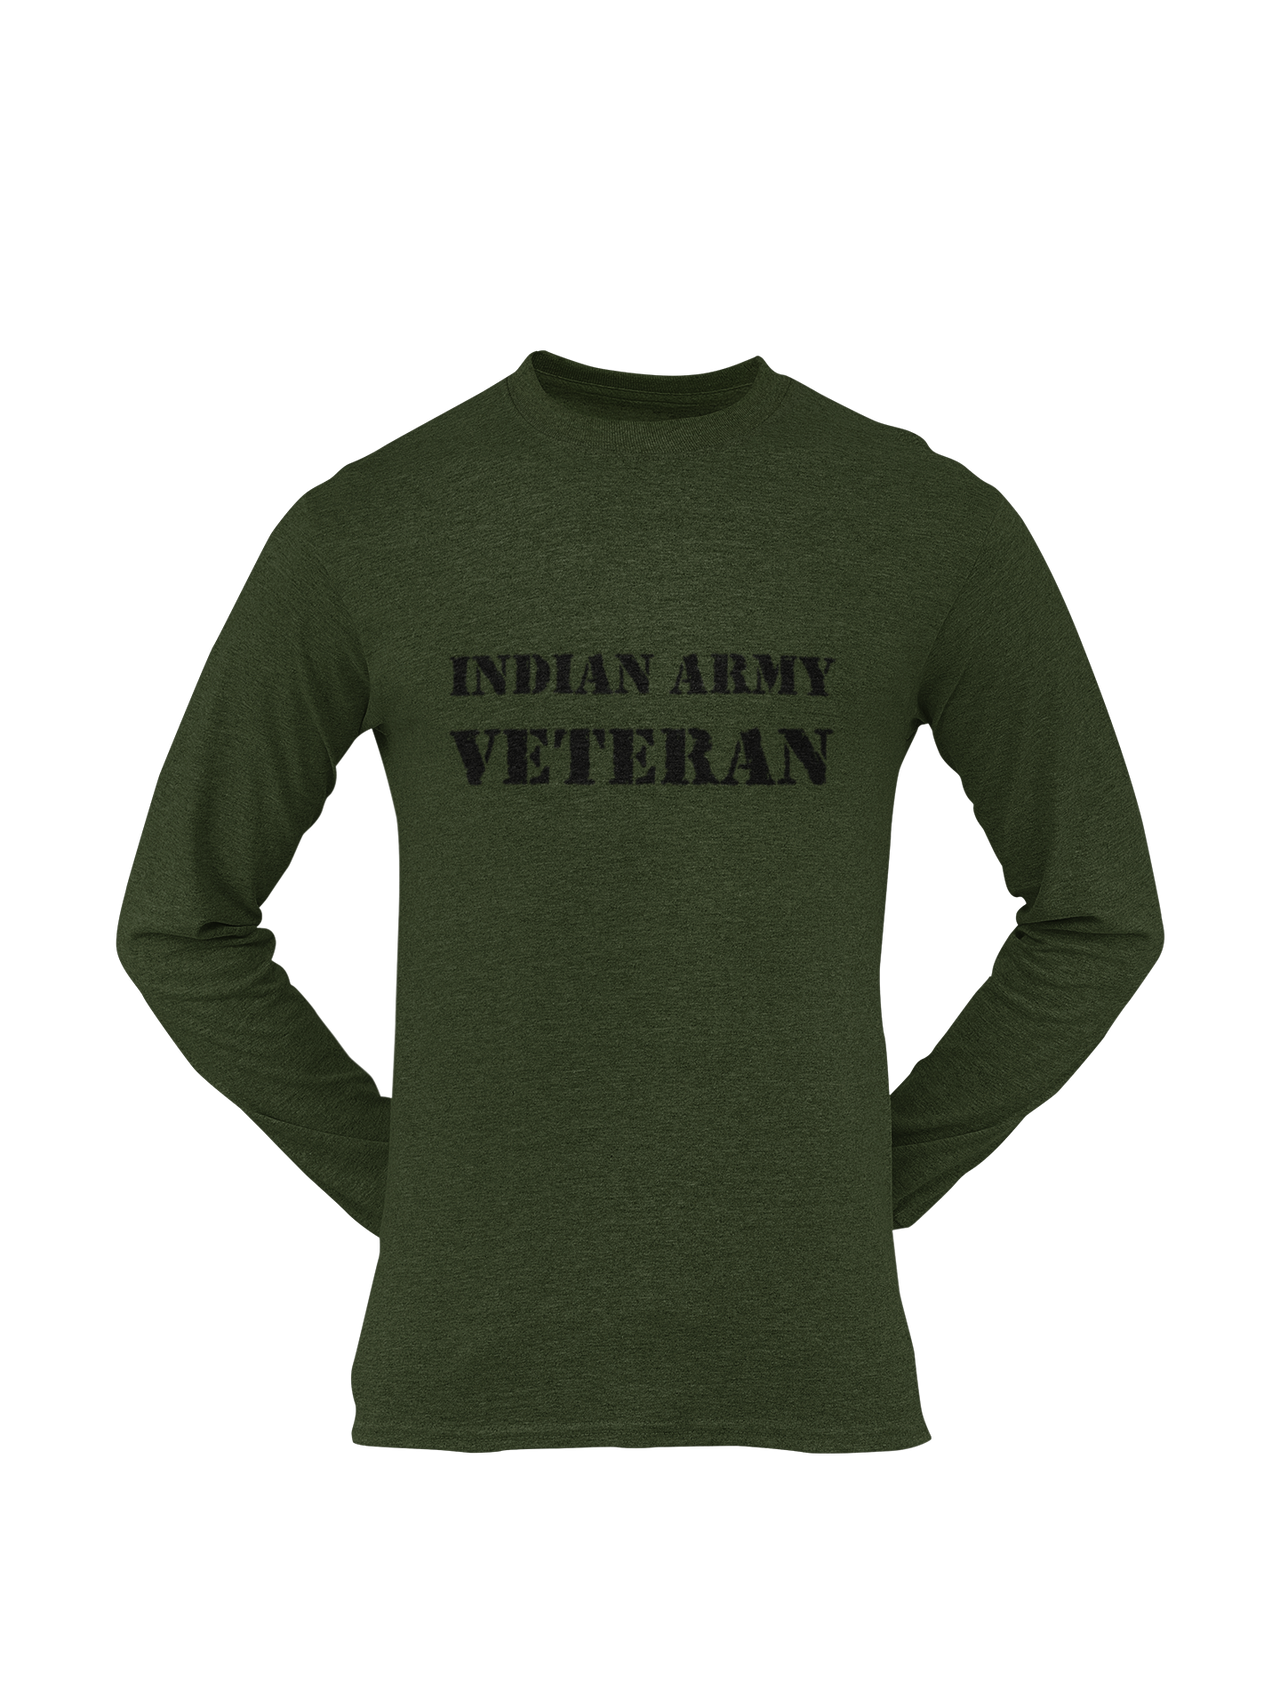 Military T-shirt - Indian Army Veteran (Men)